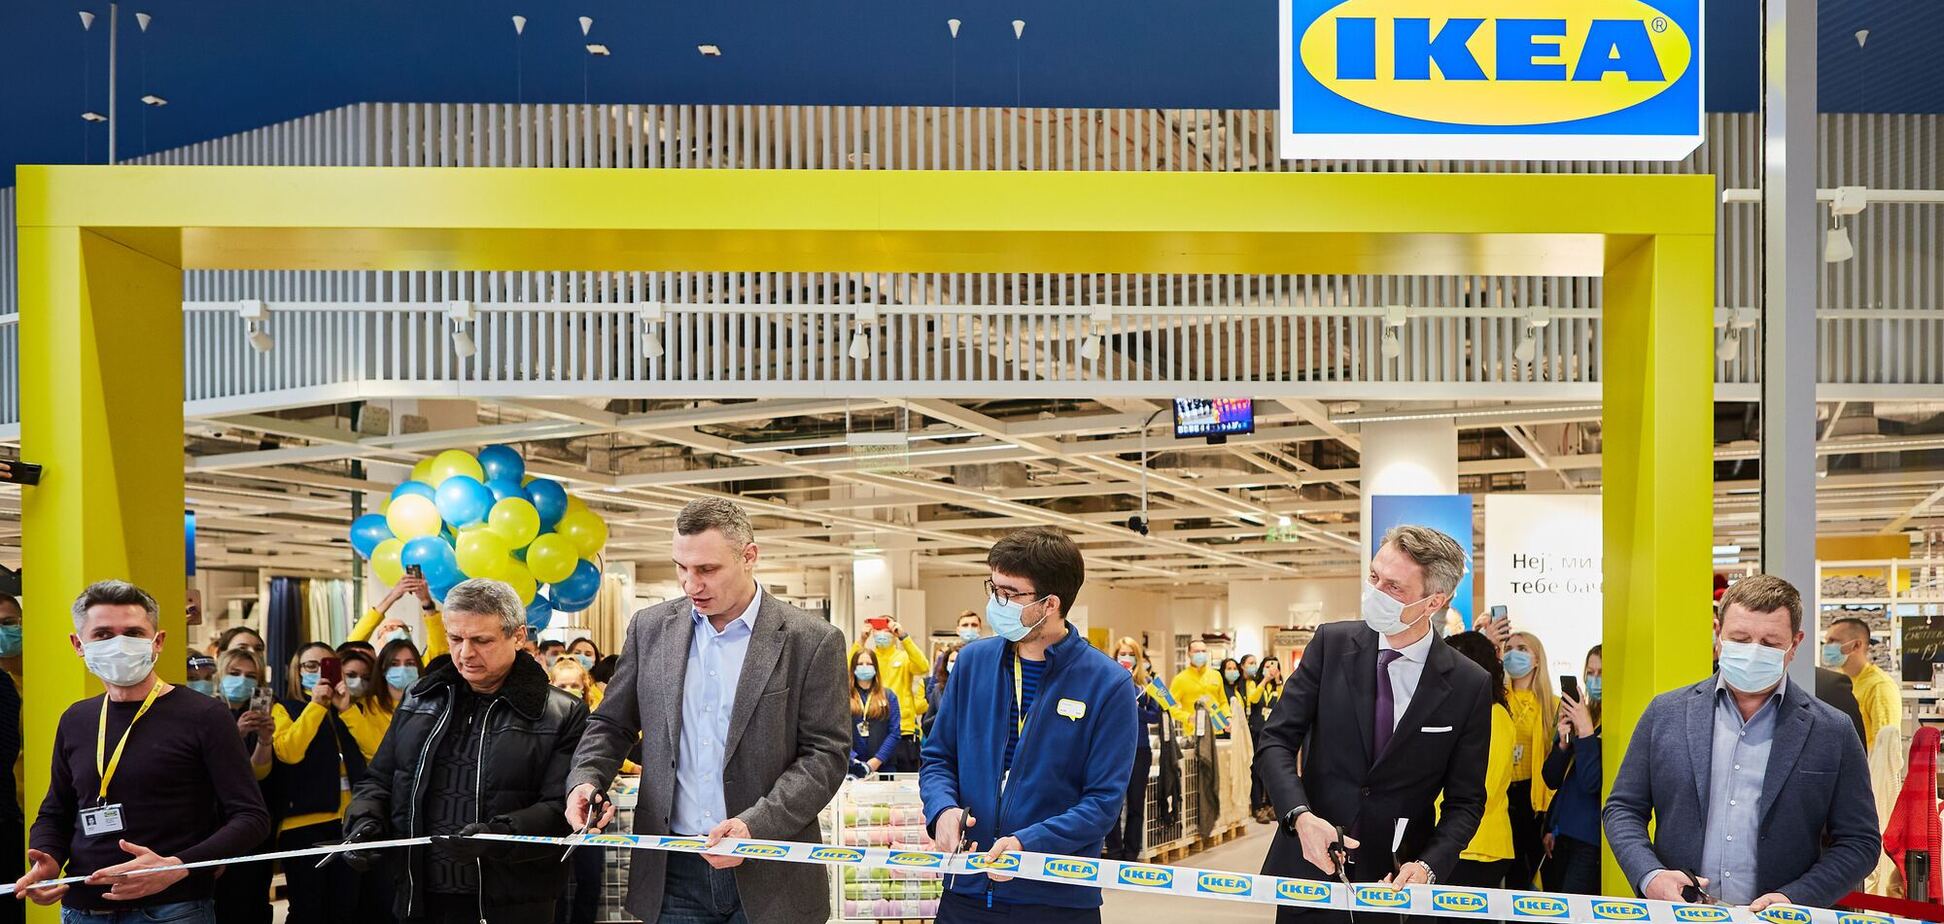 Открытие первого магазина Ikea в Киеве